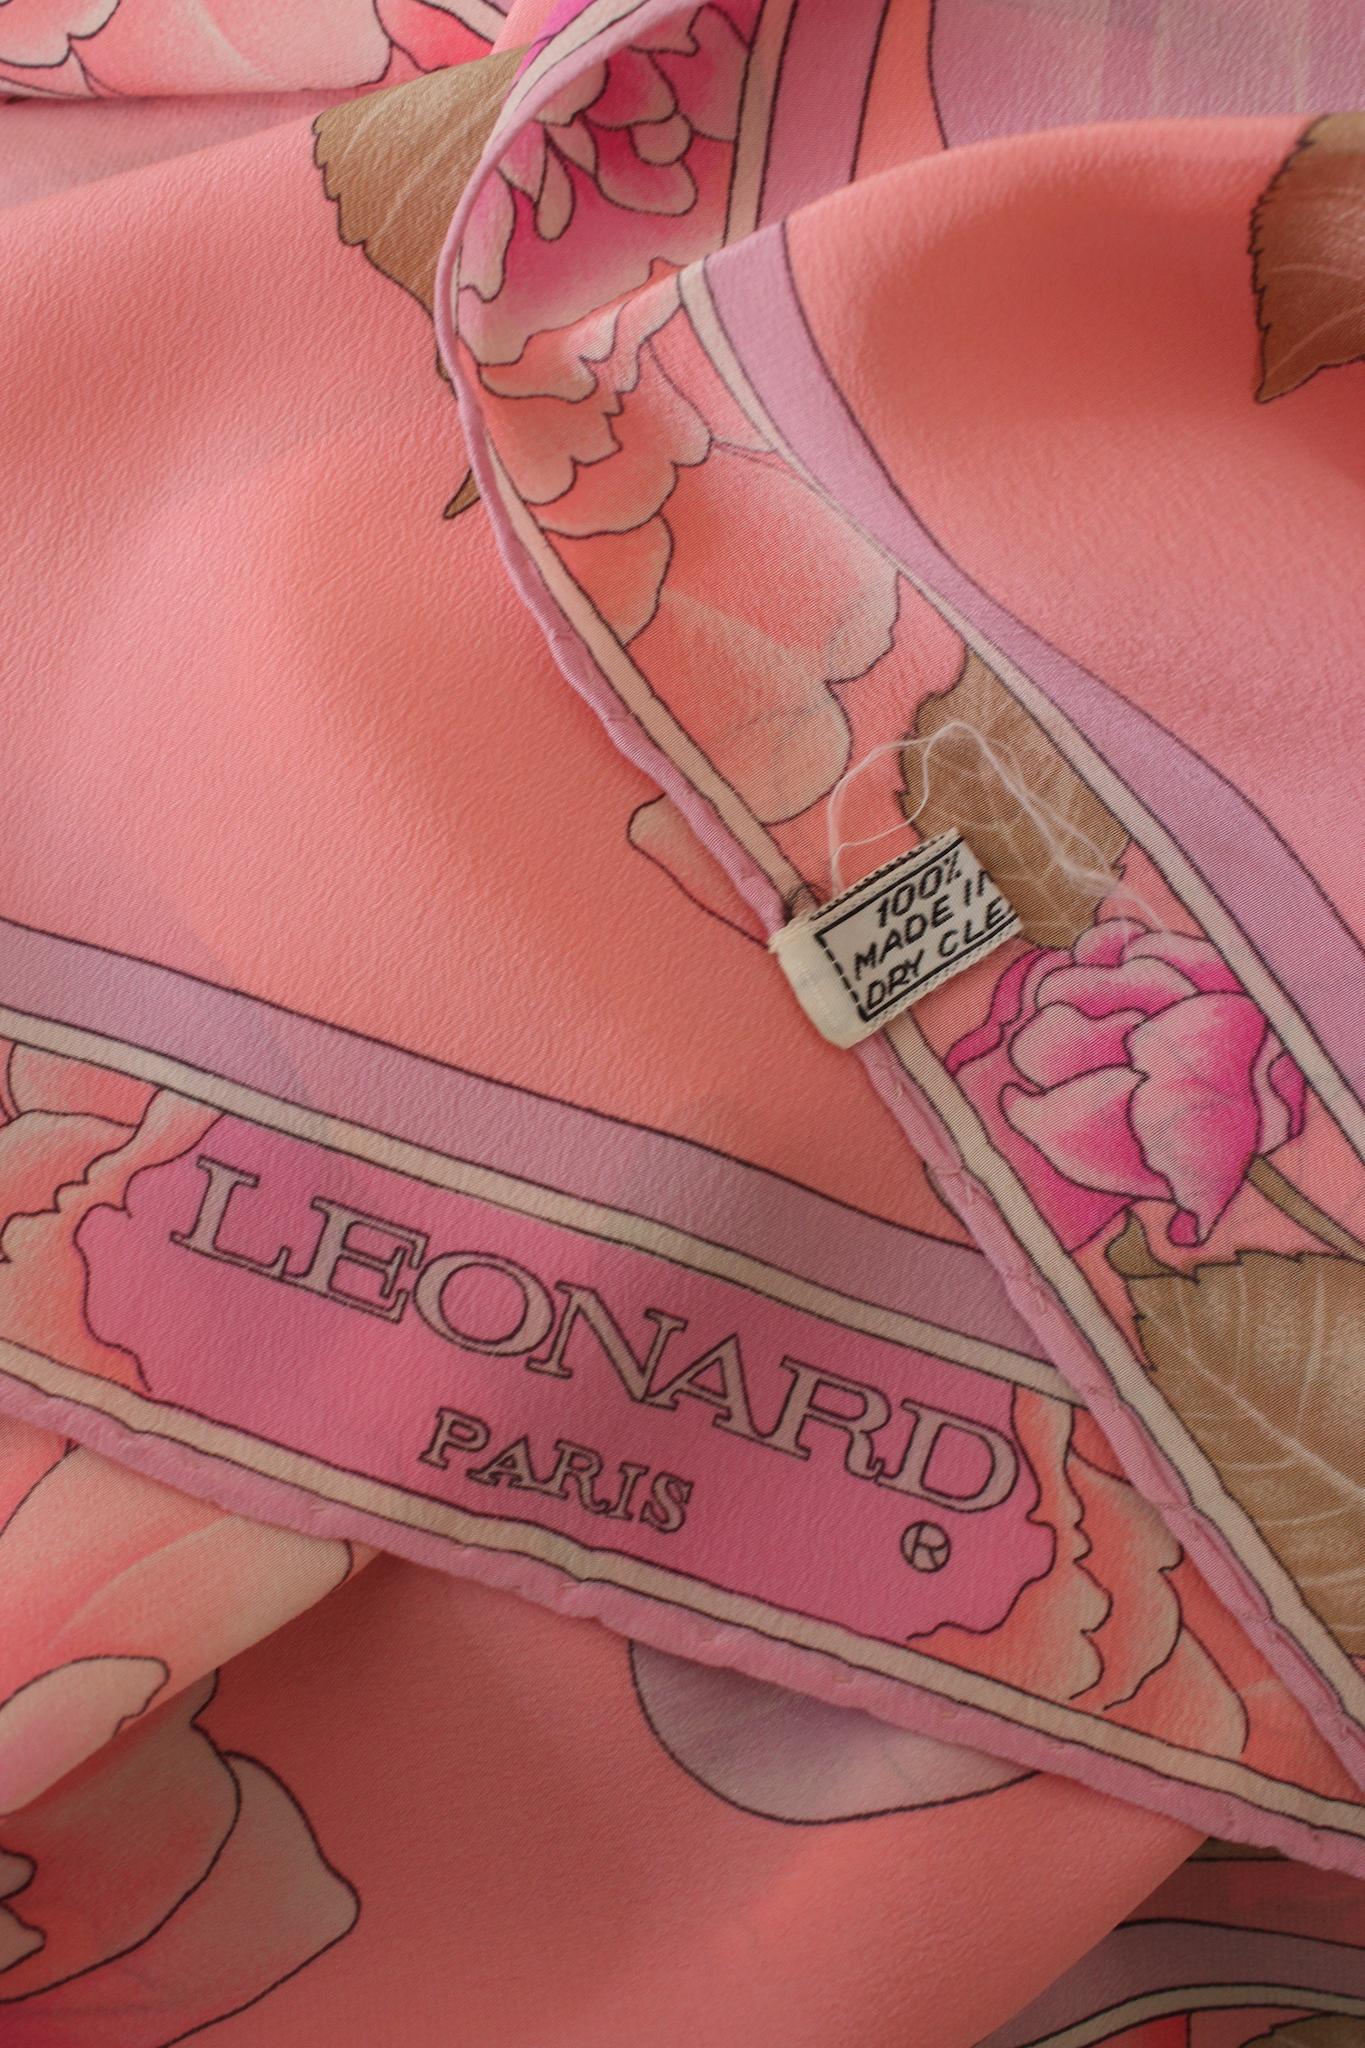 Echarpe vintage des années 80 de Leonard Paris. Modèle rectangulaire, couleur rose avec motifs floraux violets. Tissu 100 % soie.

Longueur : 180 cm
Hauteur : 58 cm